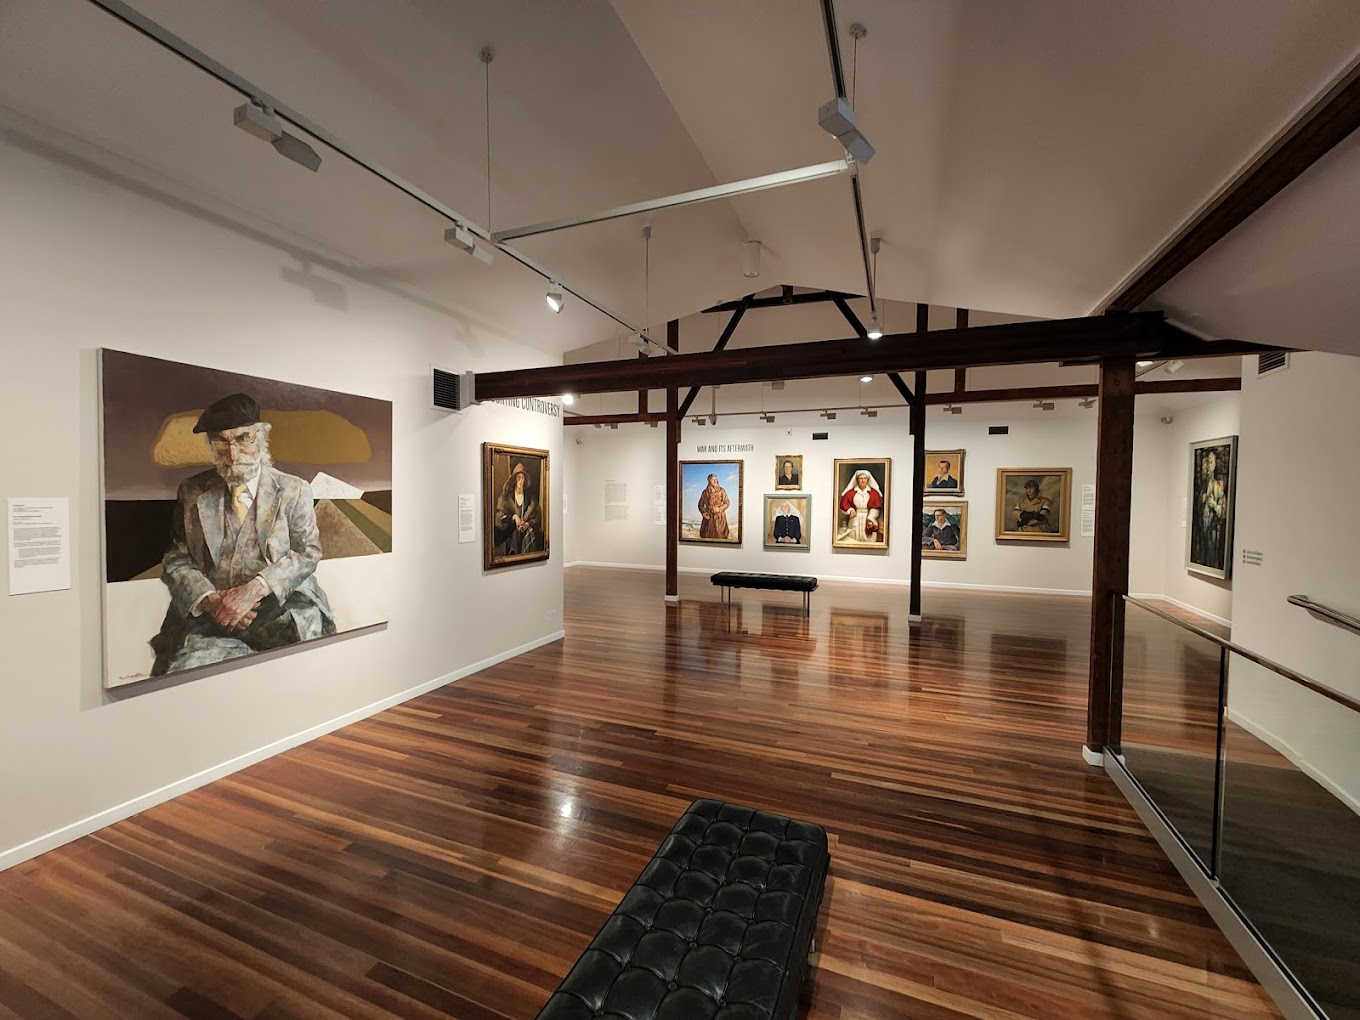 Cairns Art Gallery